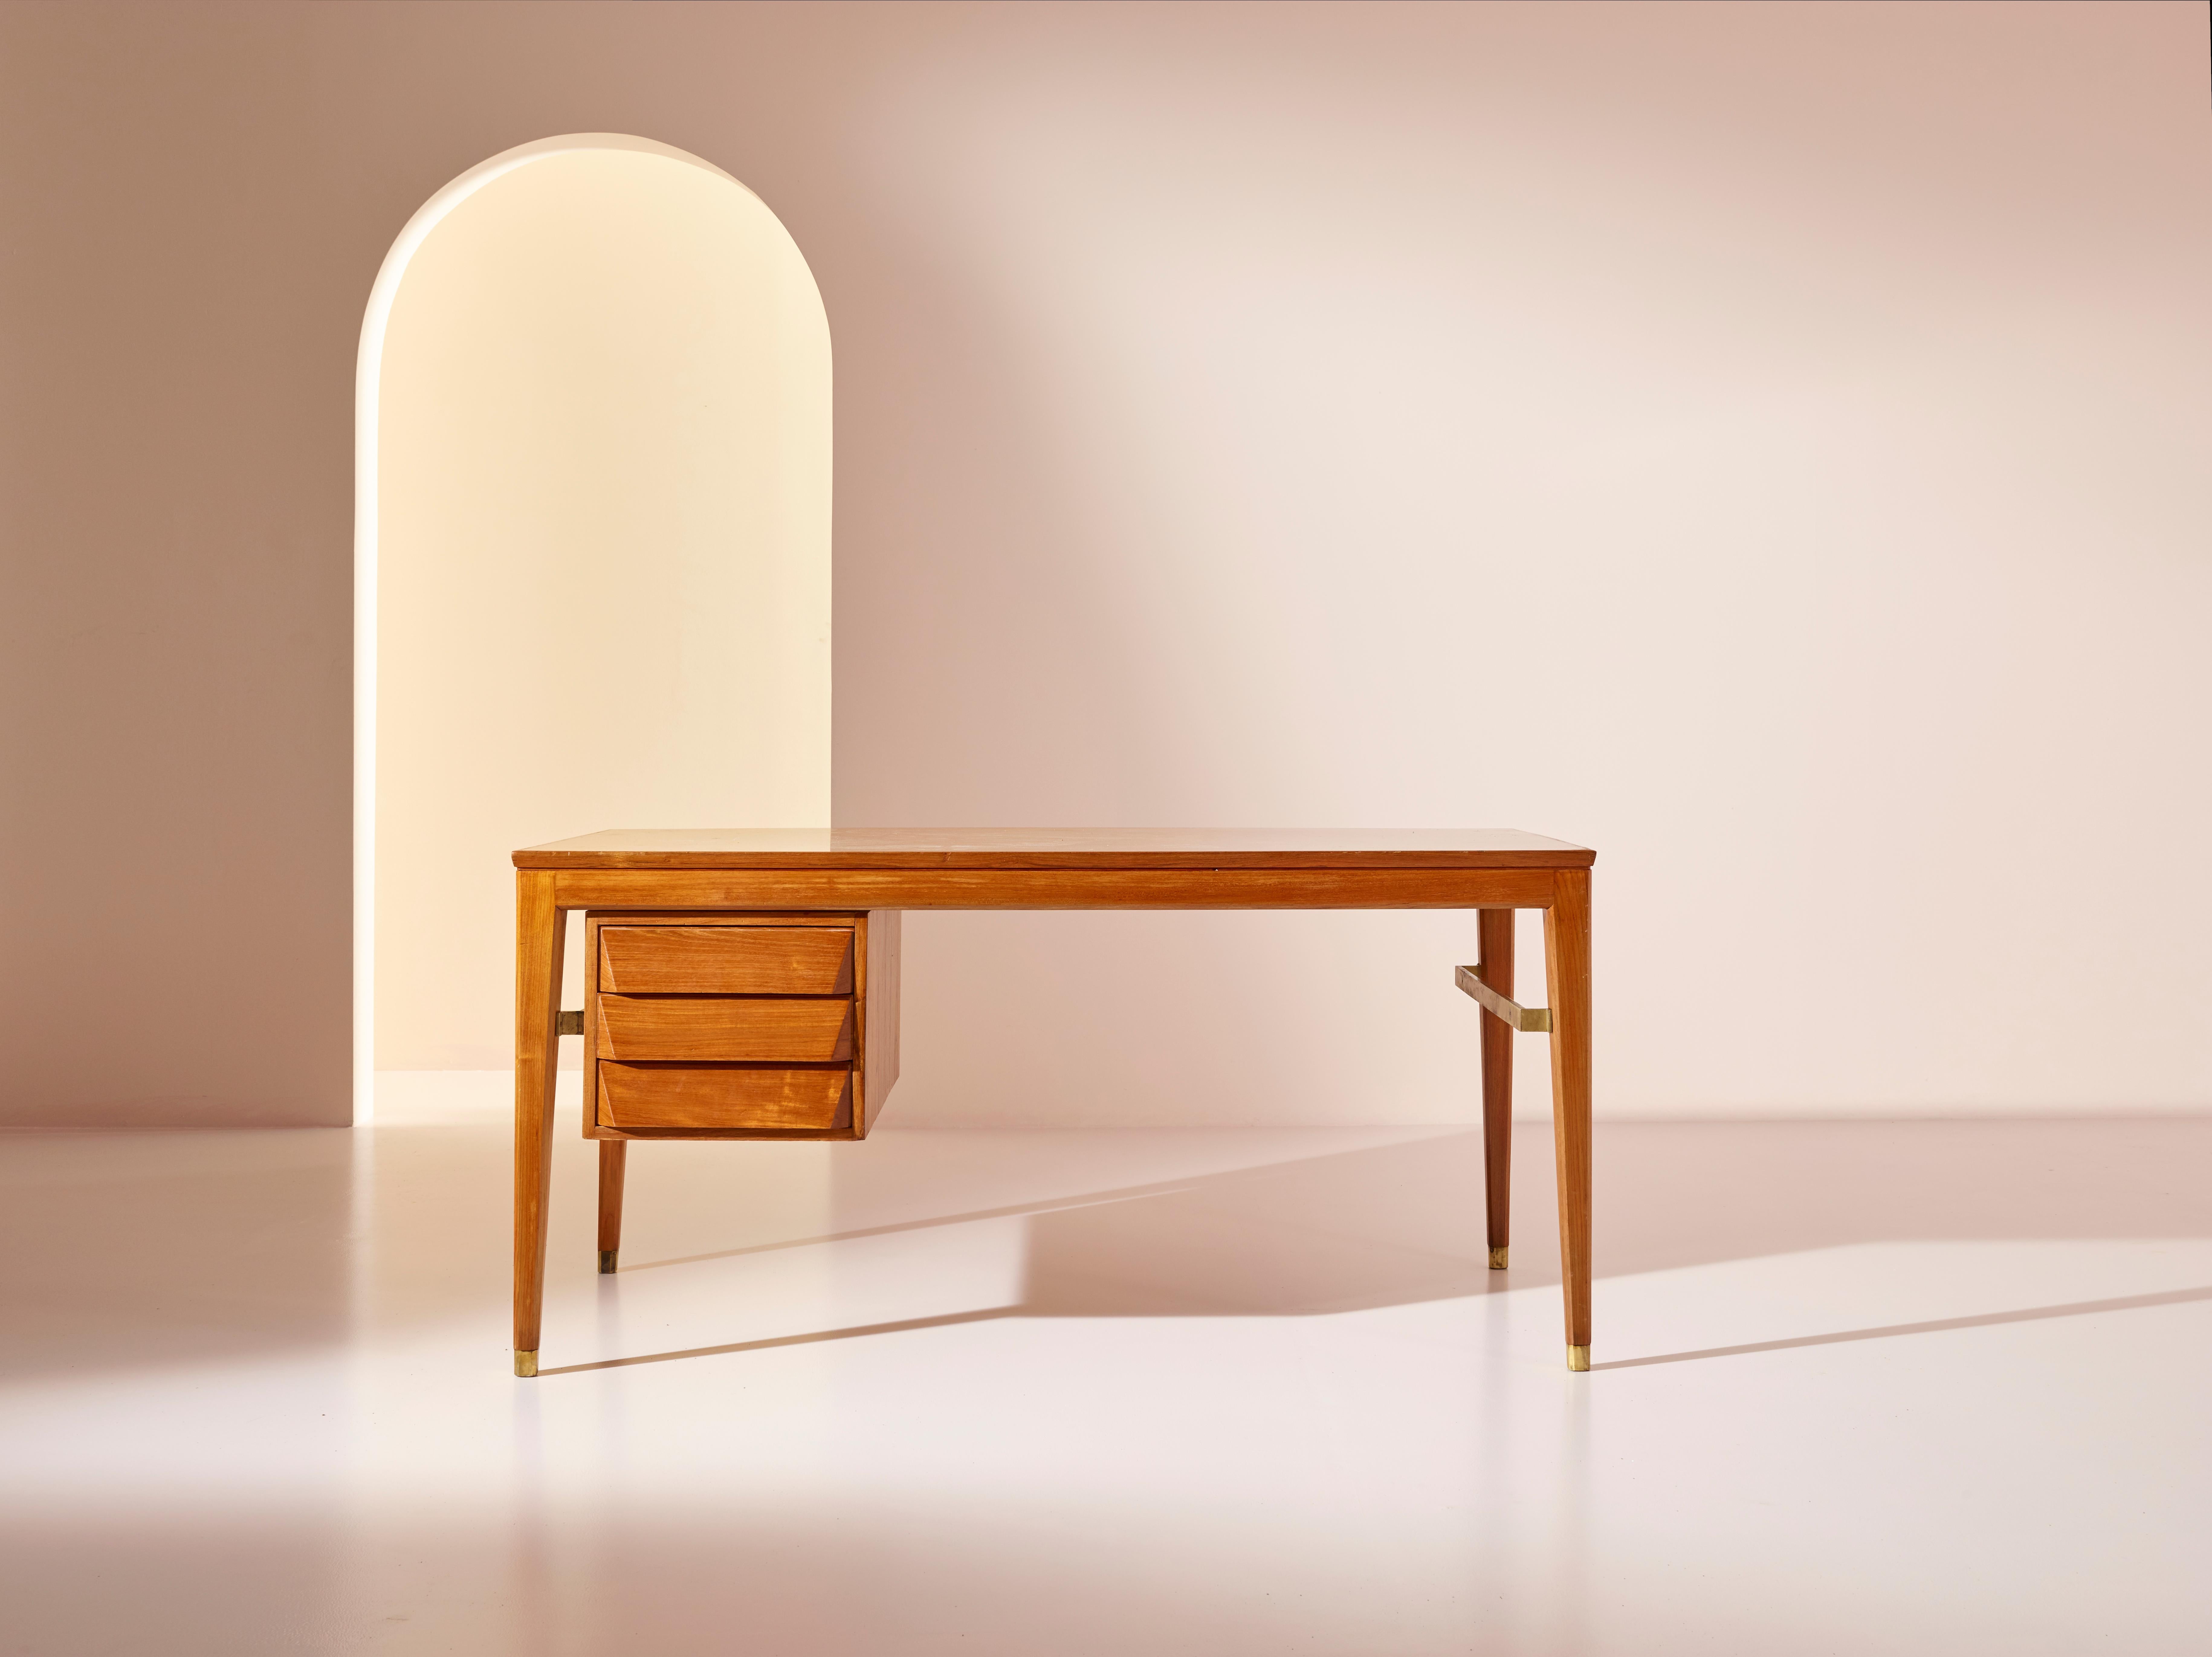 Ce bureau Gio Ponti, conçu pour les bureaux de BNL et fabriqué par Isa Bergamo dans les années 1950, est un magnifique meuble qui met en valeur le style caractéristique du designer. 

Fabriqué en bois de teck massif, le bureau présente un design